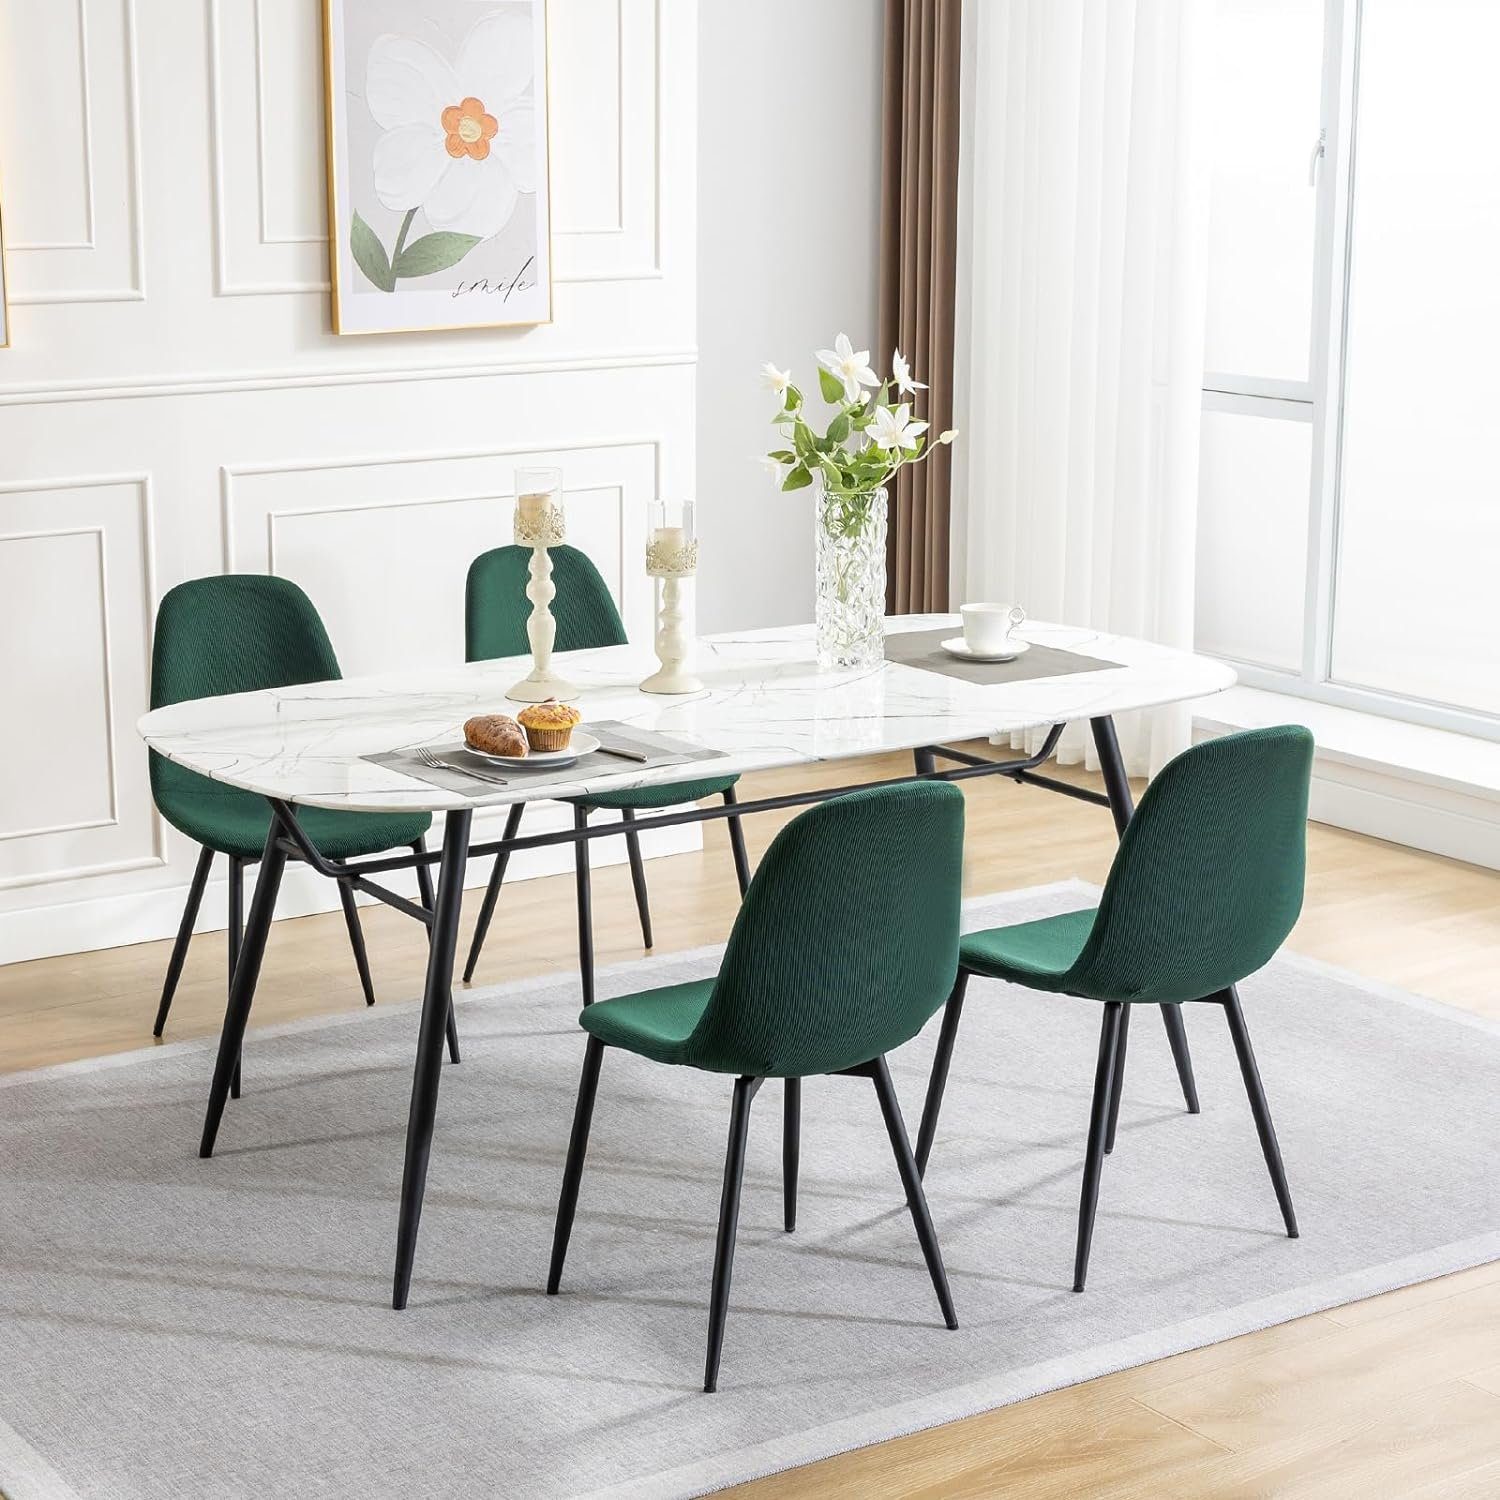 EUGAD Küchenstuhl (4 Dunkelgrün Esszimmerstühle Skandinavisch St), aus modern, Metallbeine, Cord